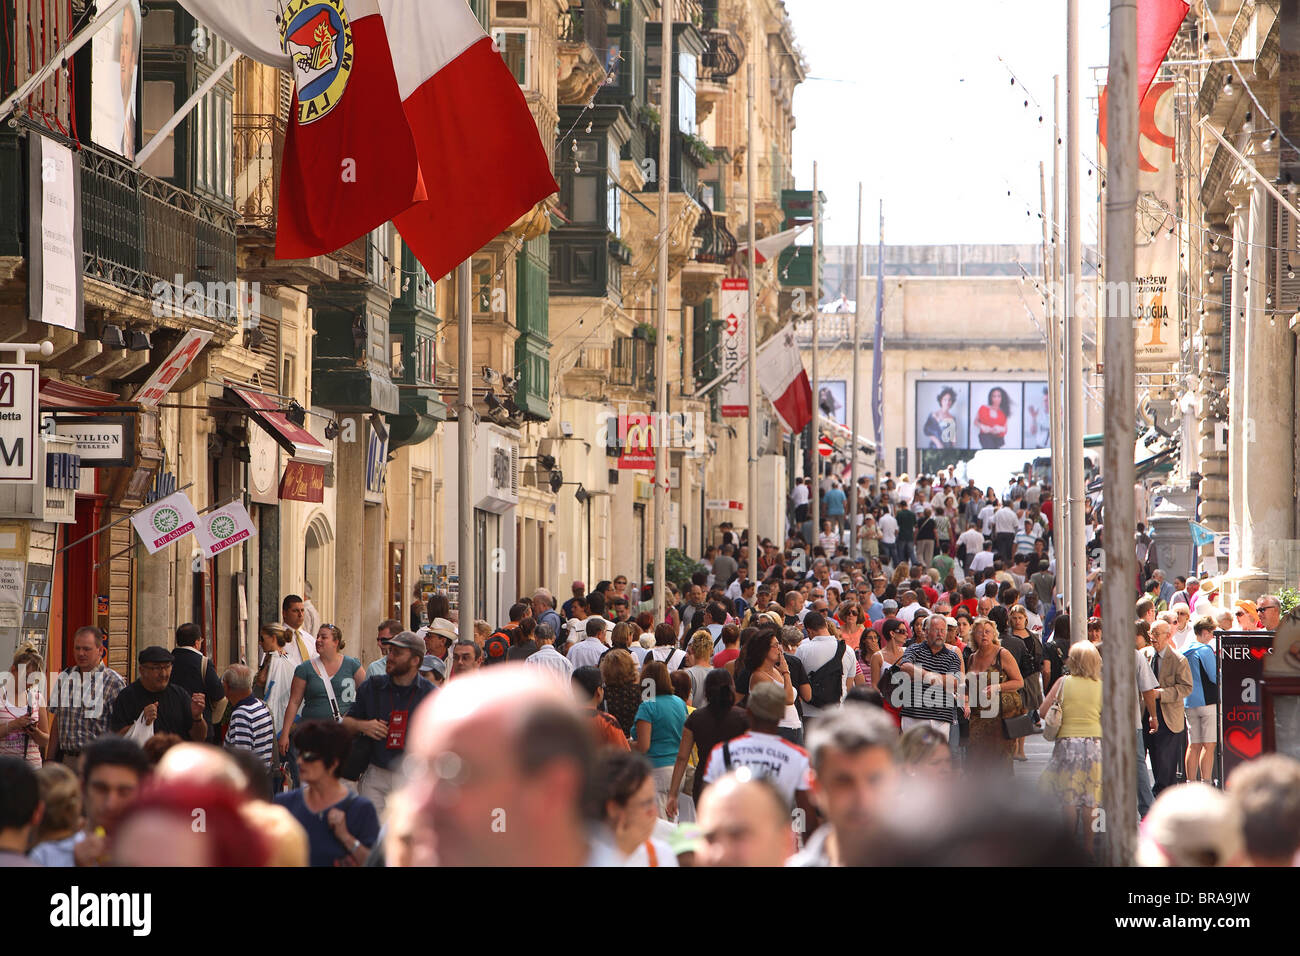 The main street pedestrianized in Valletta Malta. Stock Photo